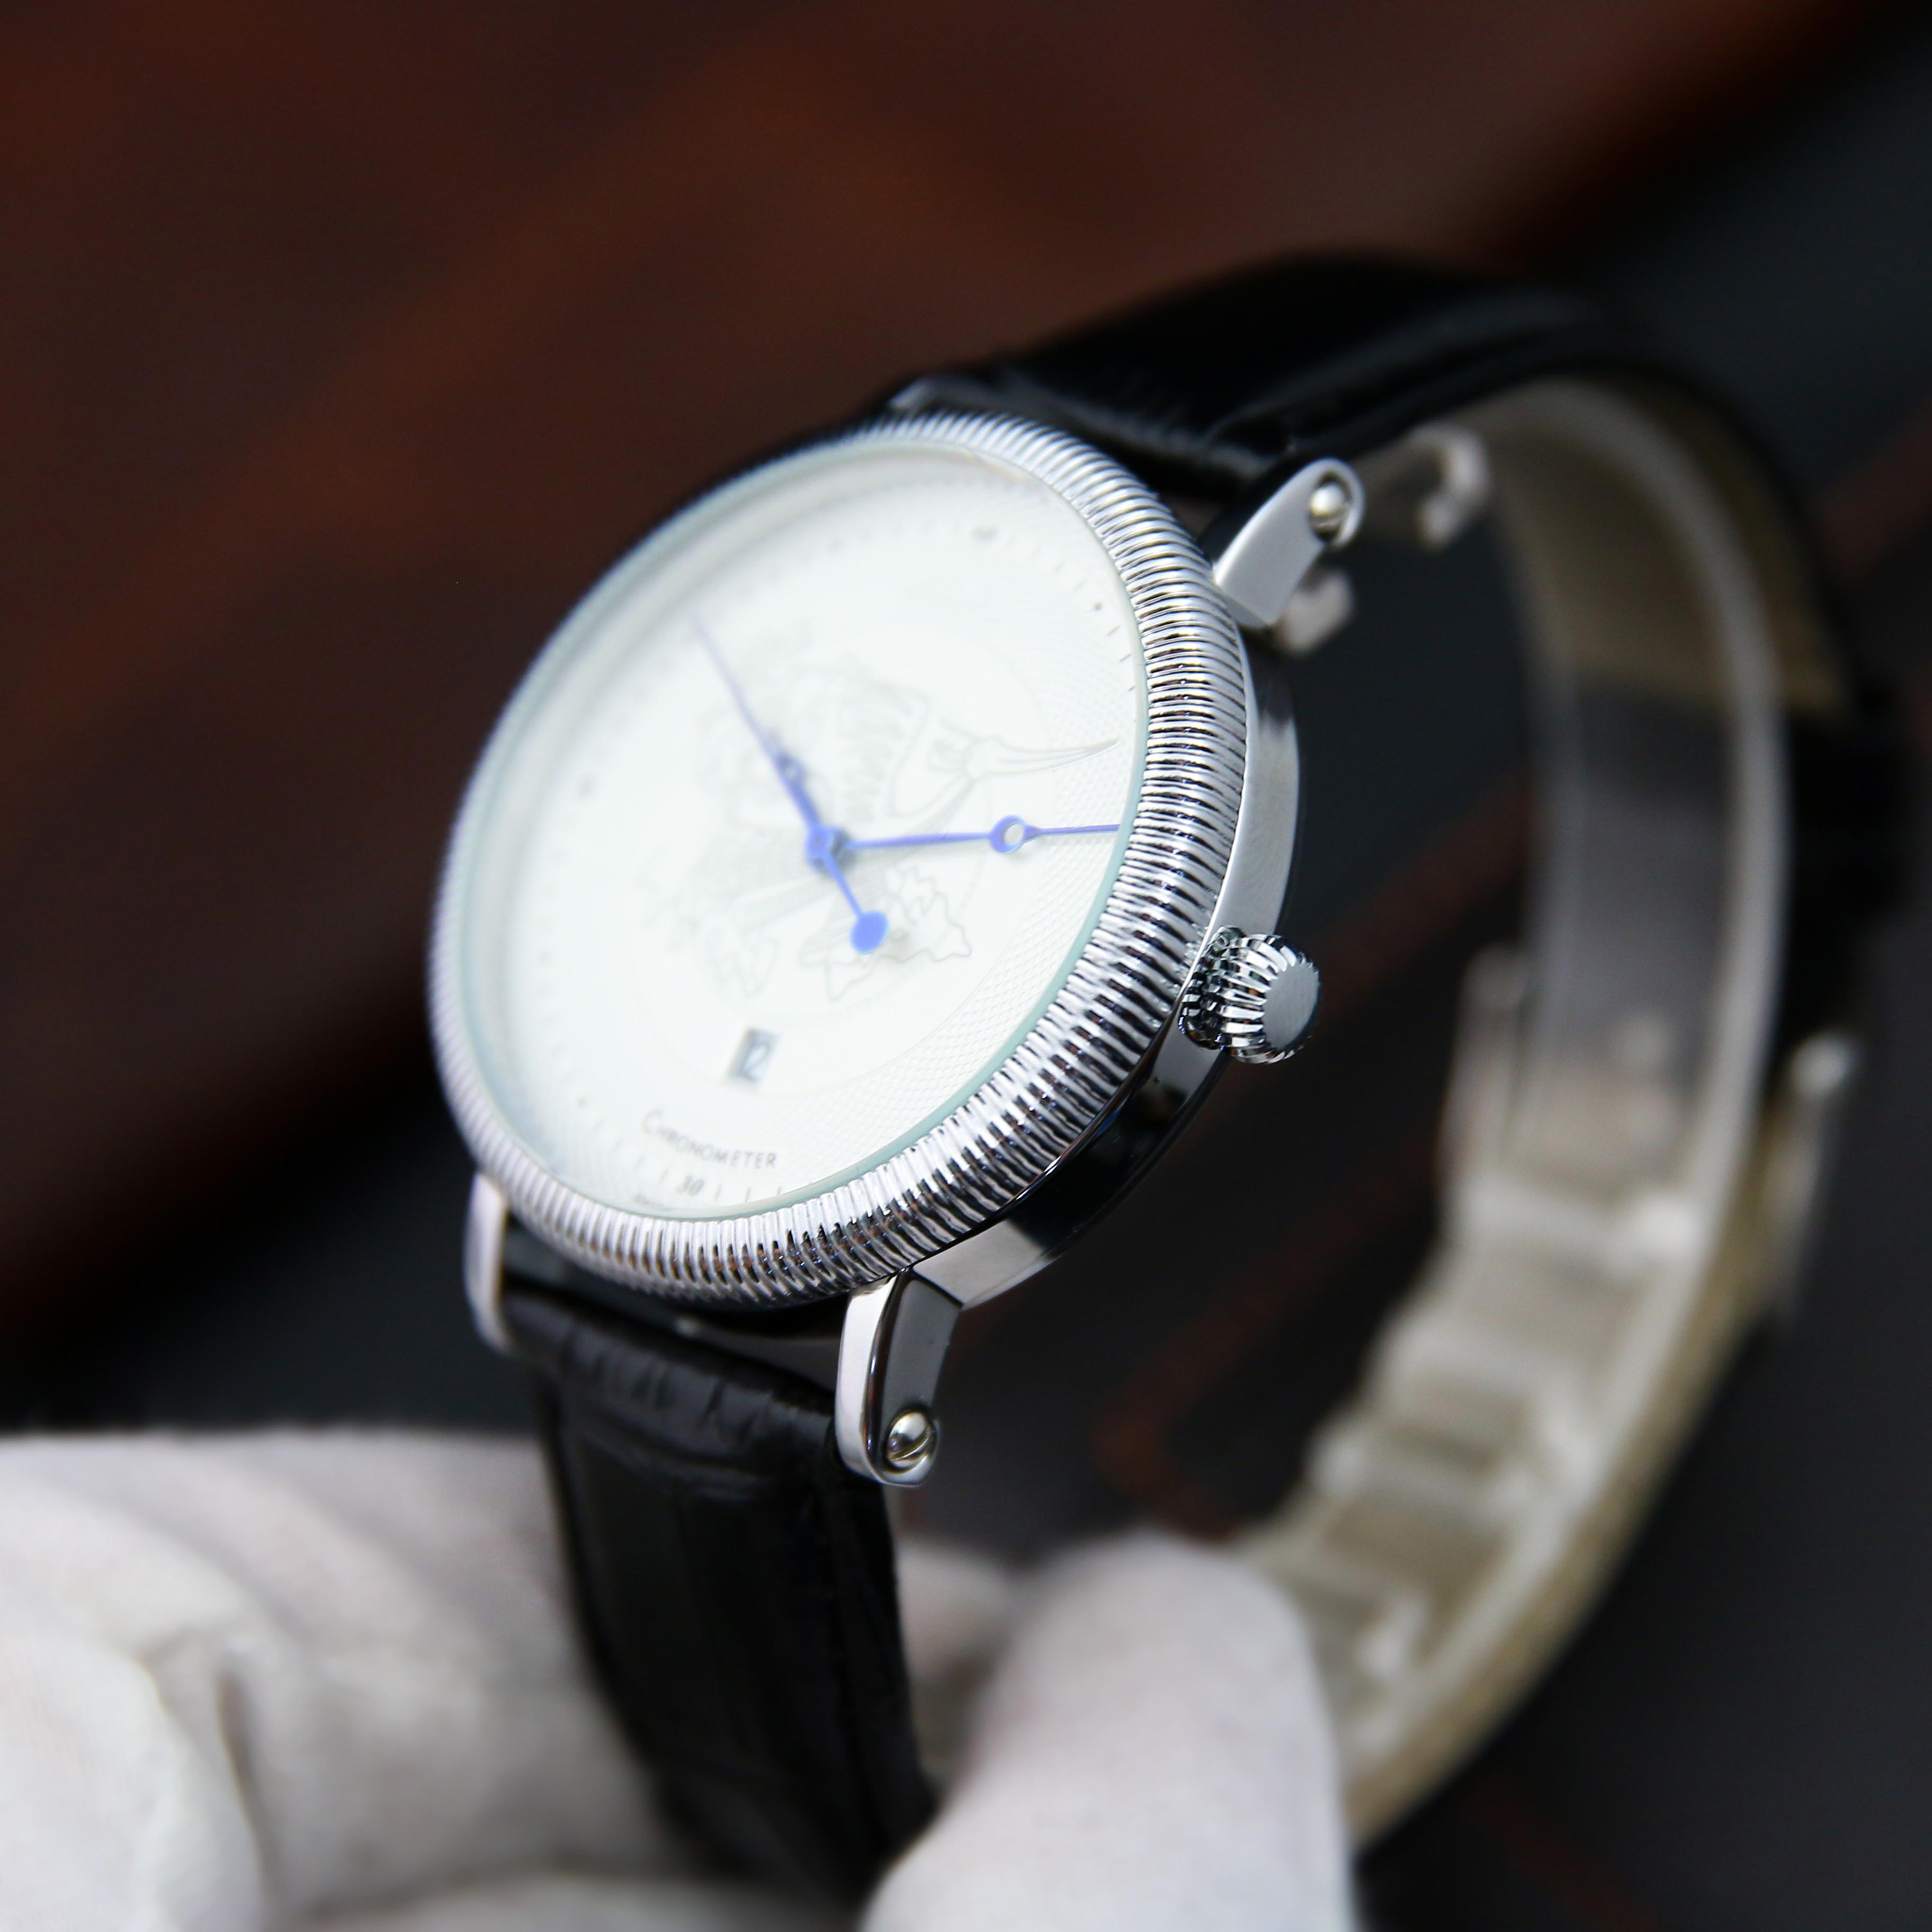 Đồng hồ nam dây da OR2120 phong cách sang trọng mặt kính chống xước cao cấp – Phù hợp đi làm, đi chơi